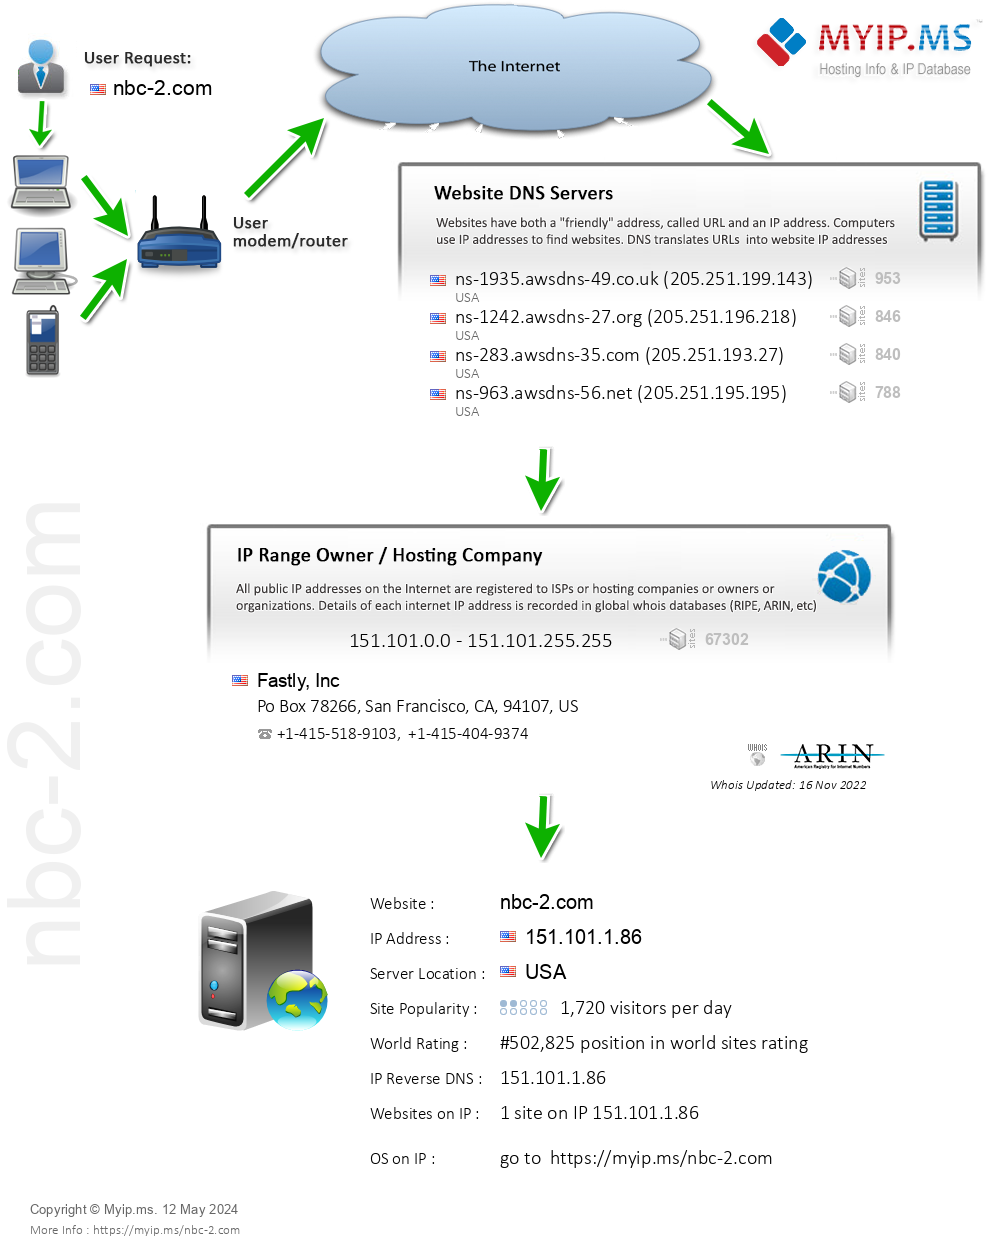 Nbc-2.com - Website Hosting Visual IP Diagram